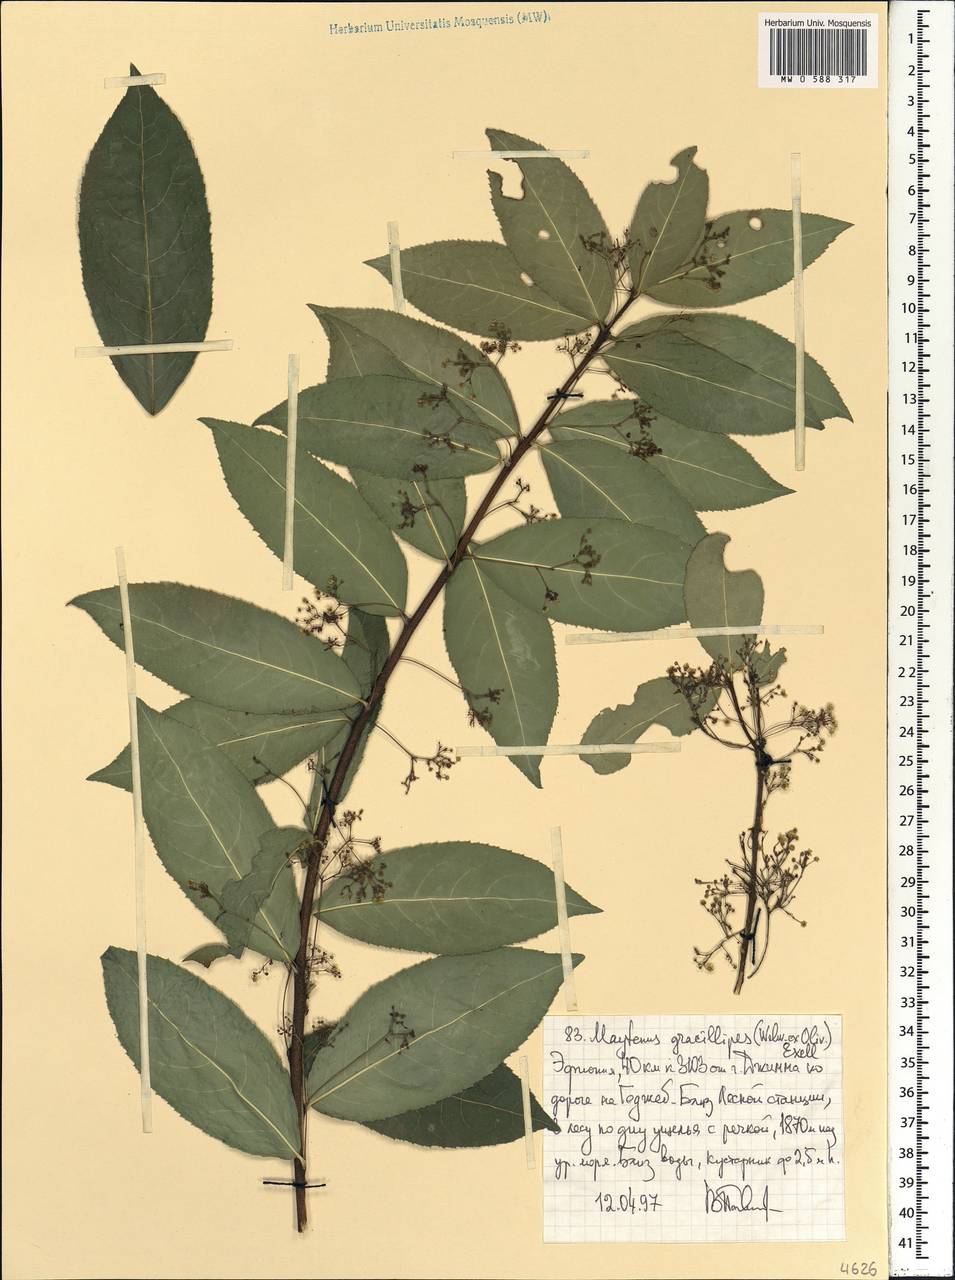 Gymnosporia gracilipes, Африка (AFR) (Эфиопия)